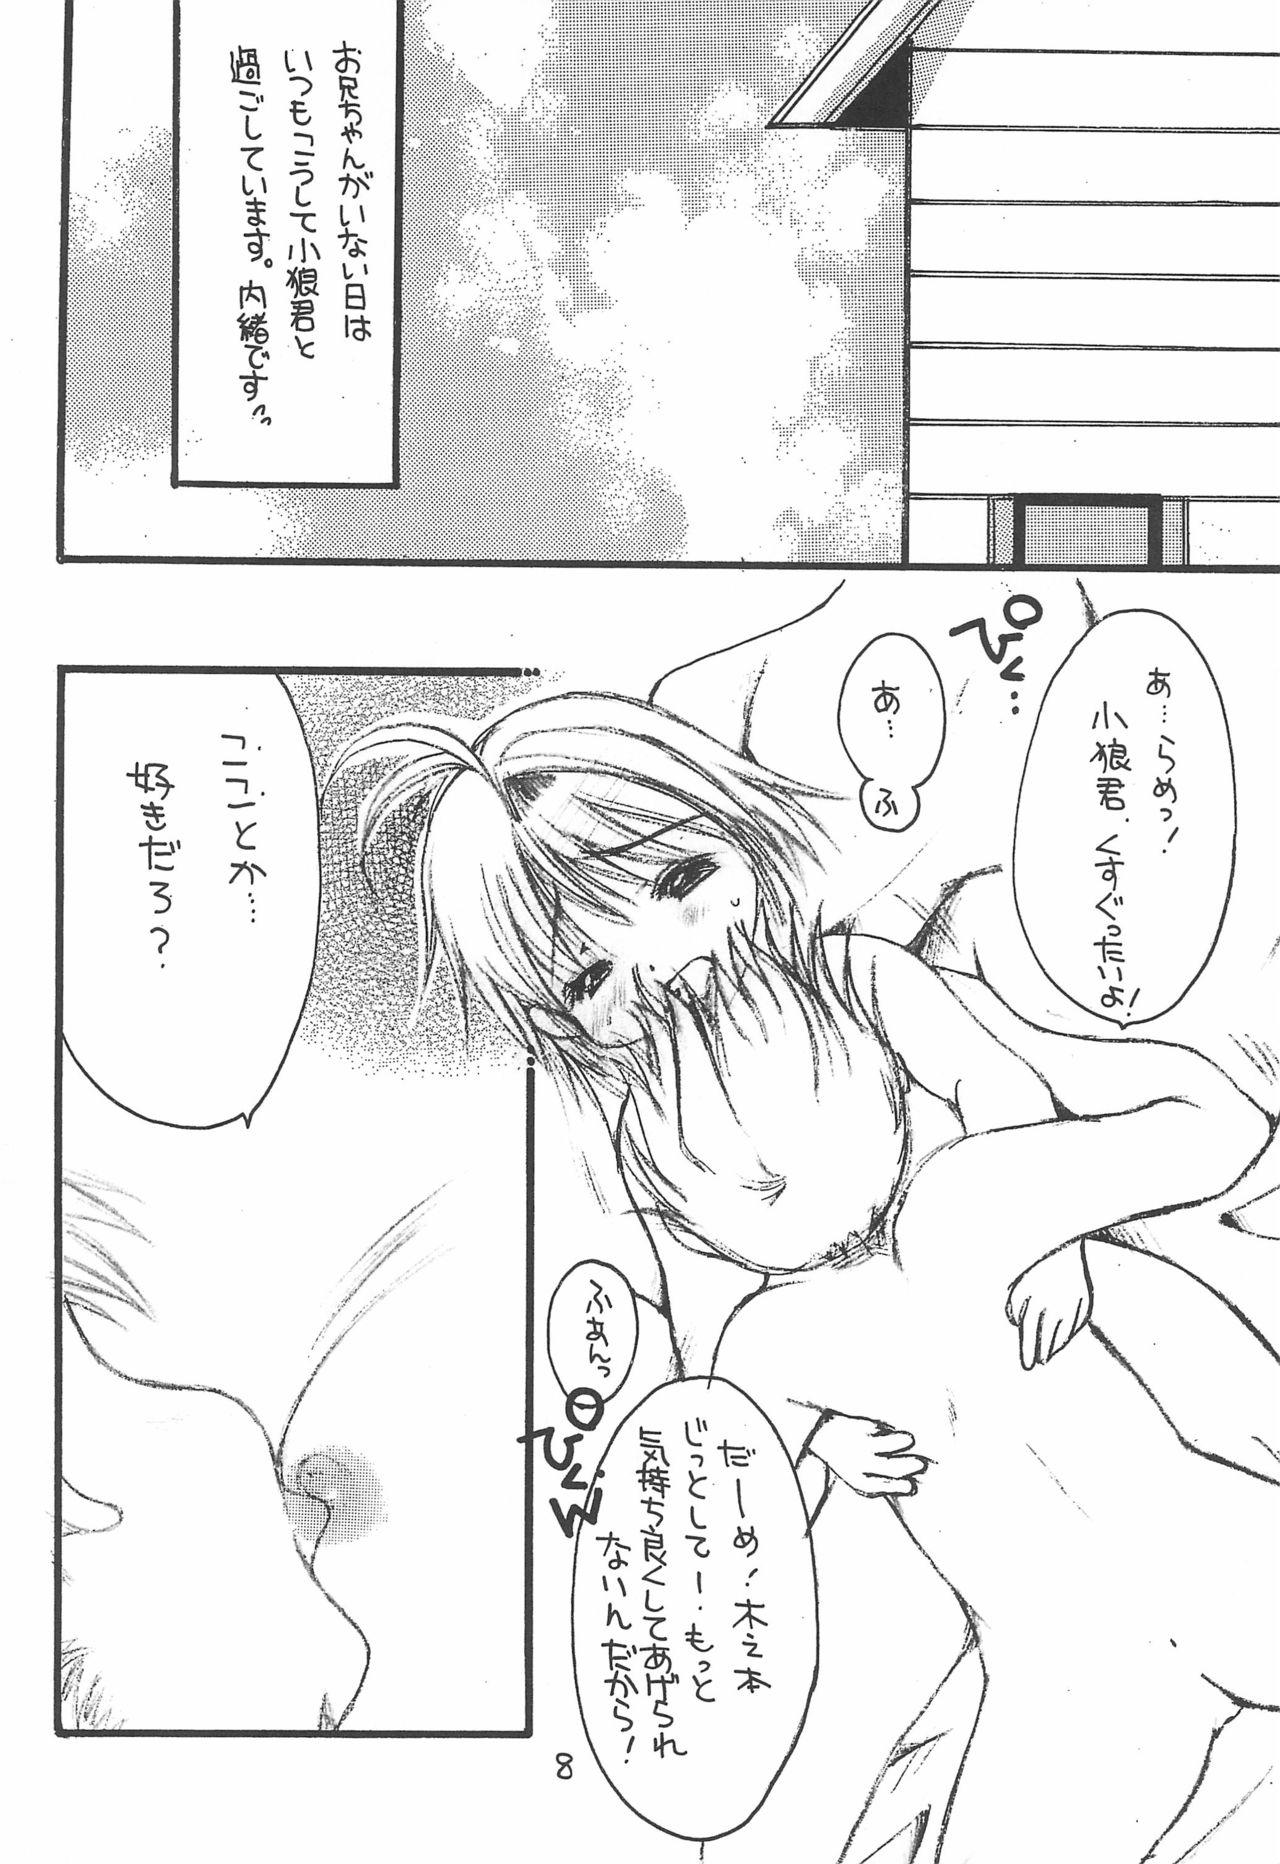 Mature Sakura Saku 12 - Cardcaptor sakura Backshots - Page 8